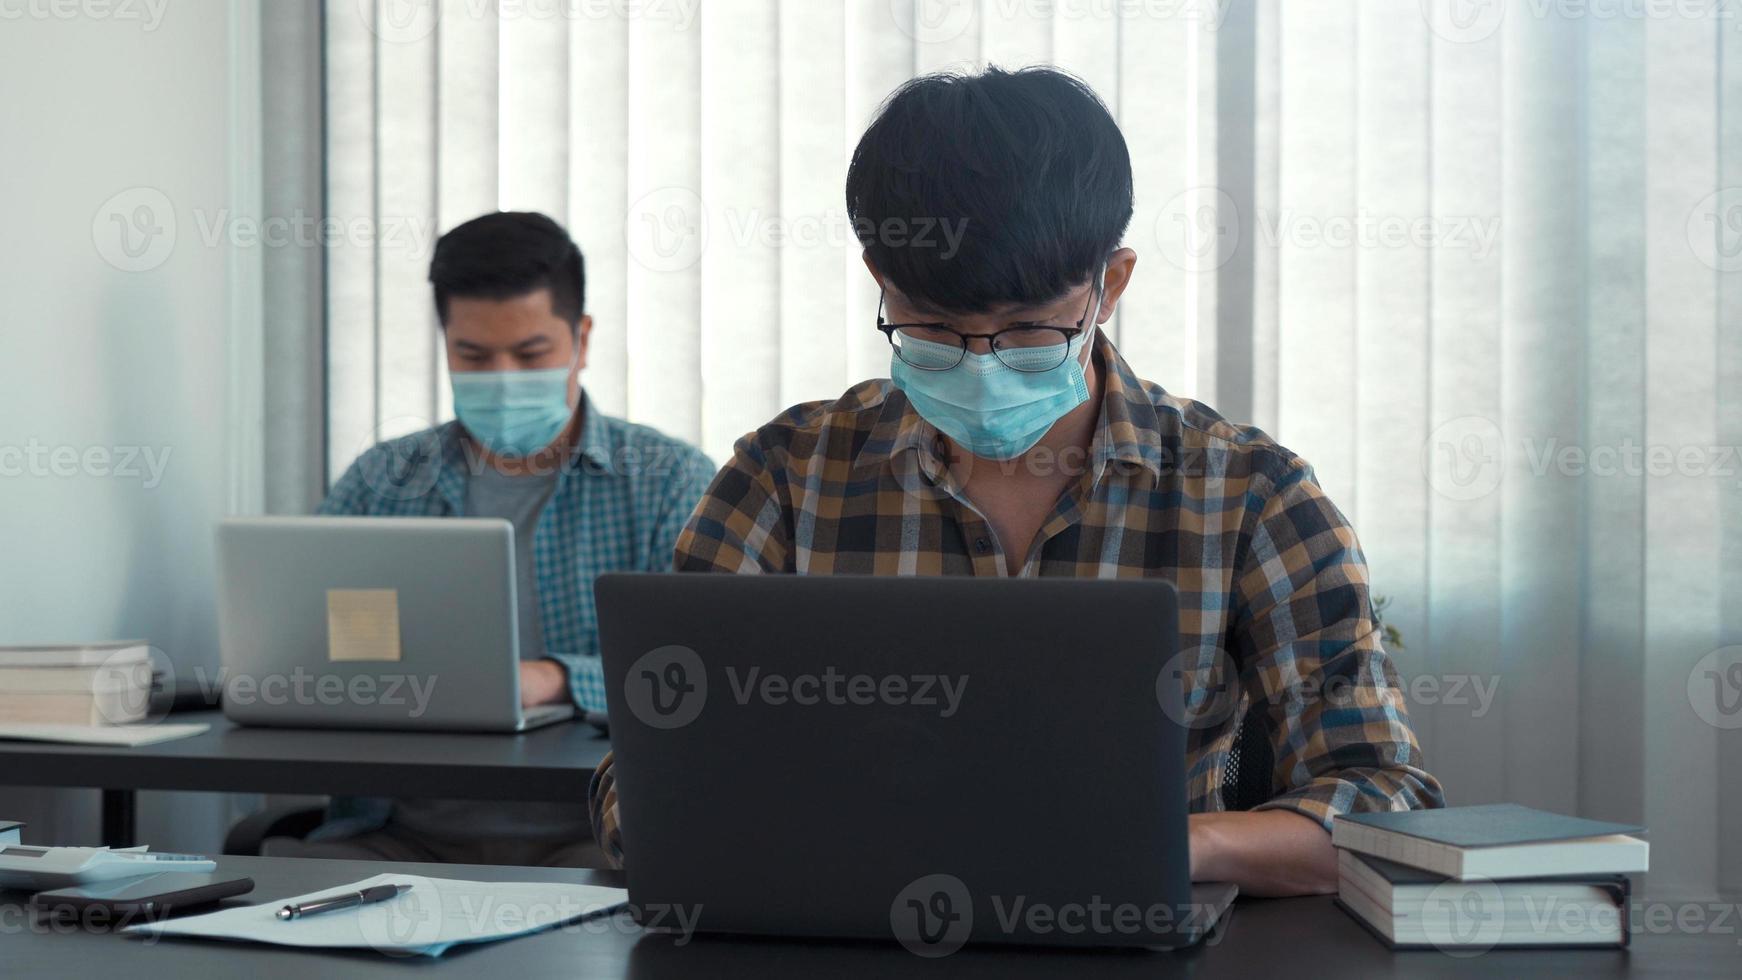 colega asiático trabalha usando uma máscara no escritório durante o covid-19. foto